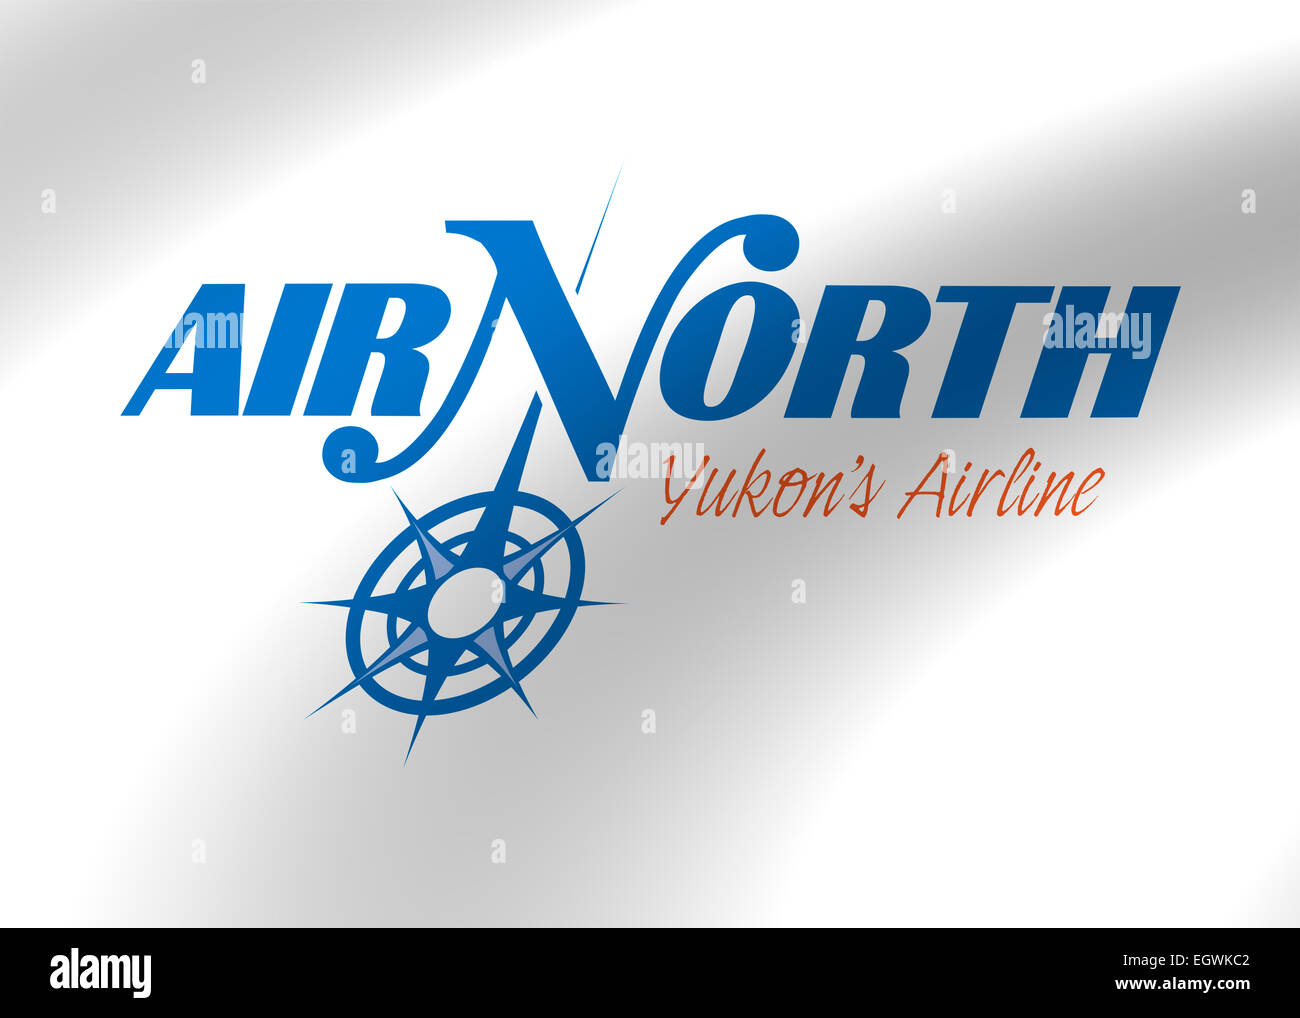 Air North - Yukon's Airline logo symbol flag emblem Stock Photo